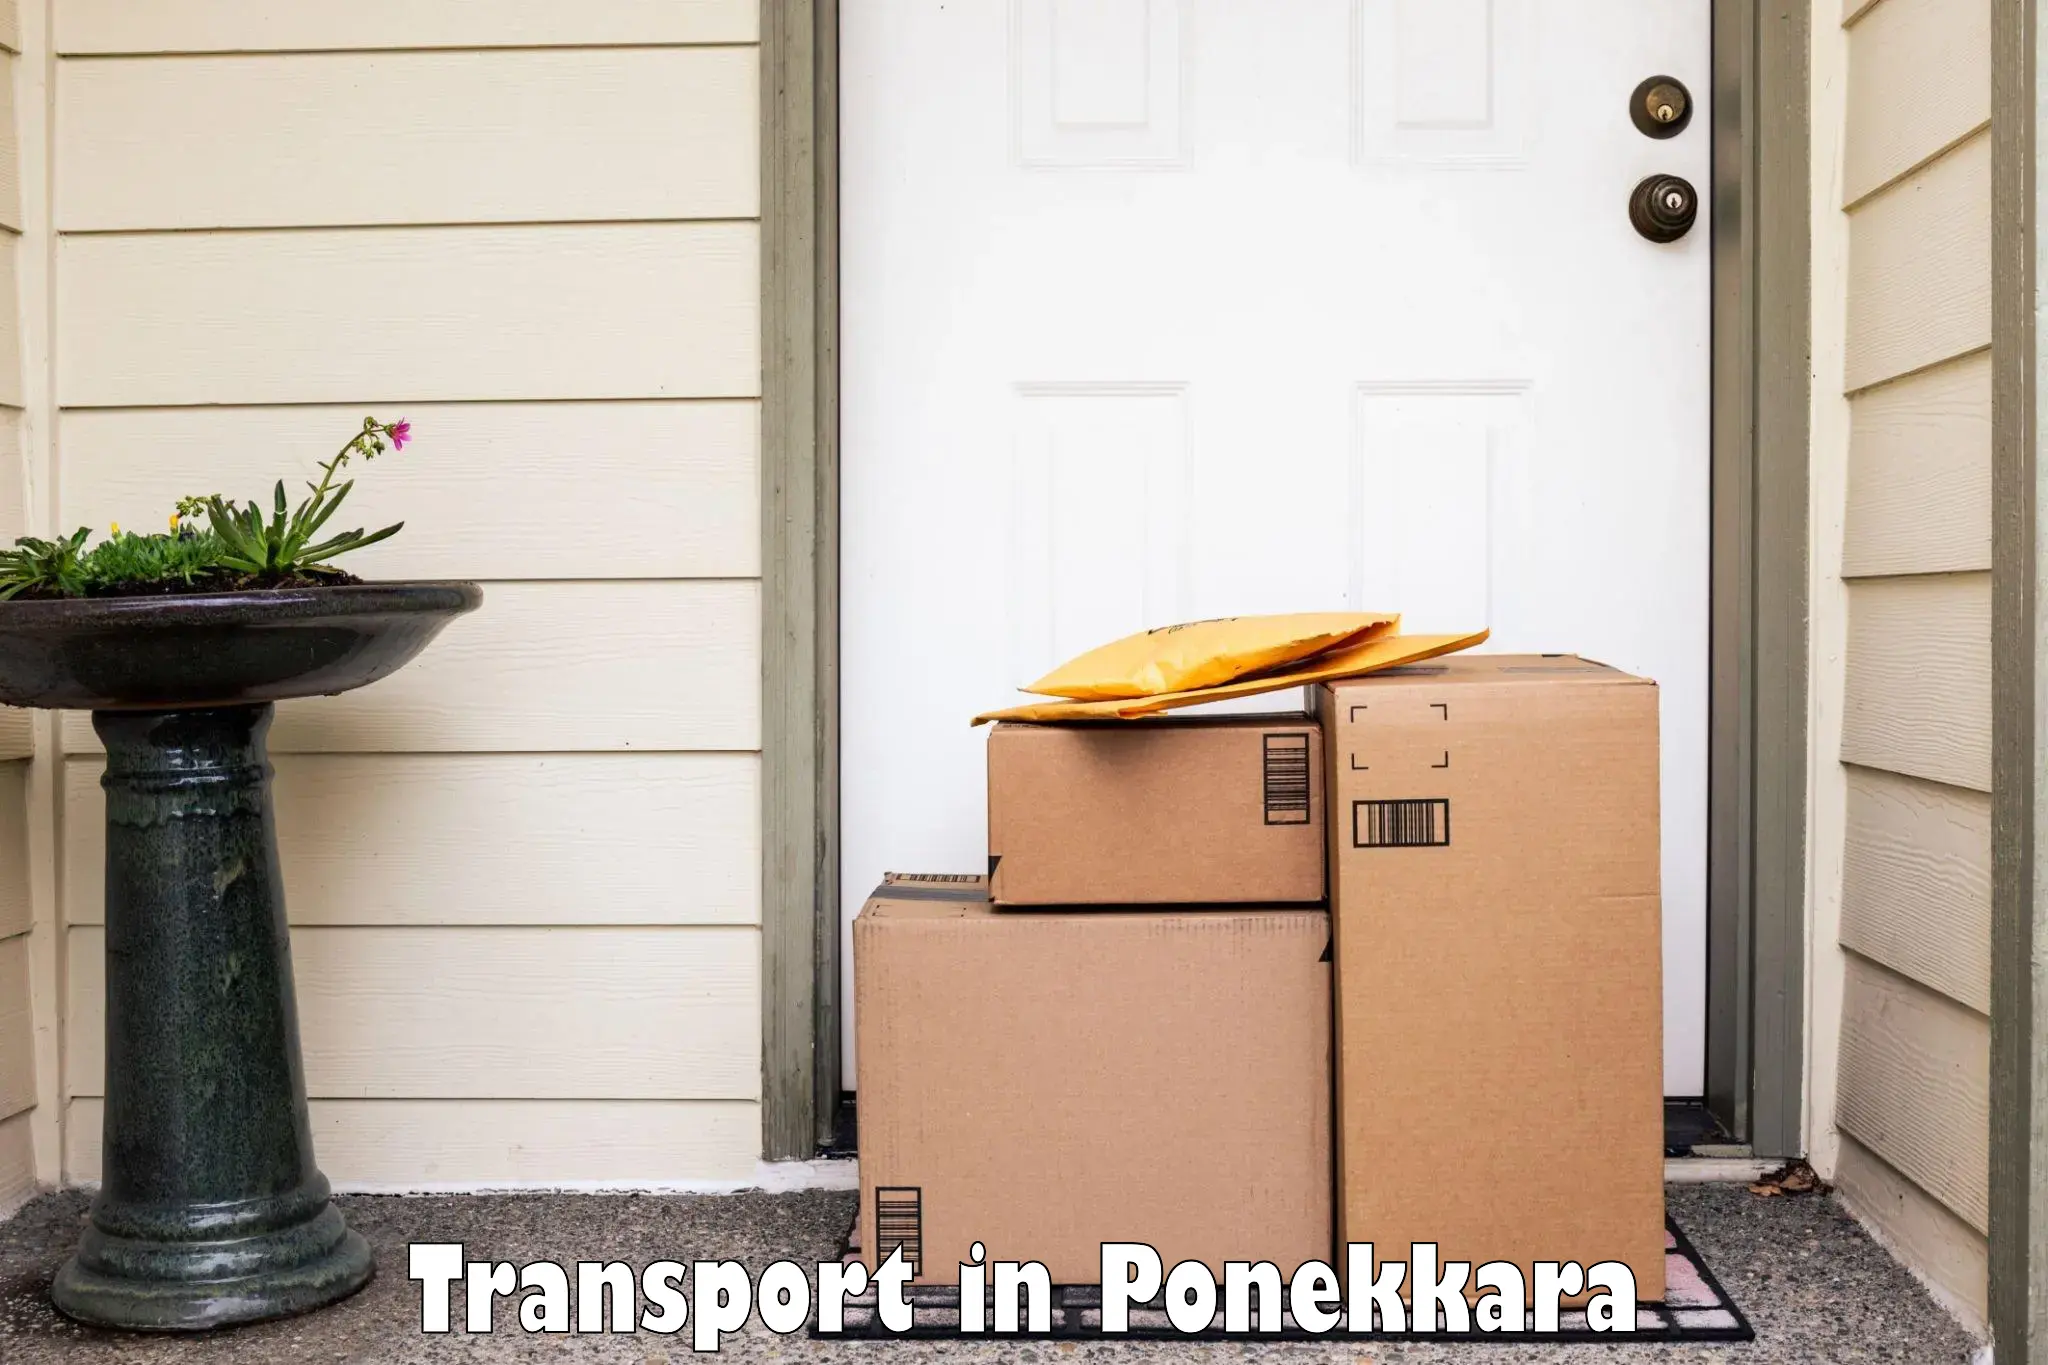 Furniture transport service in Ponekkara